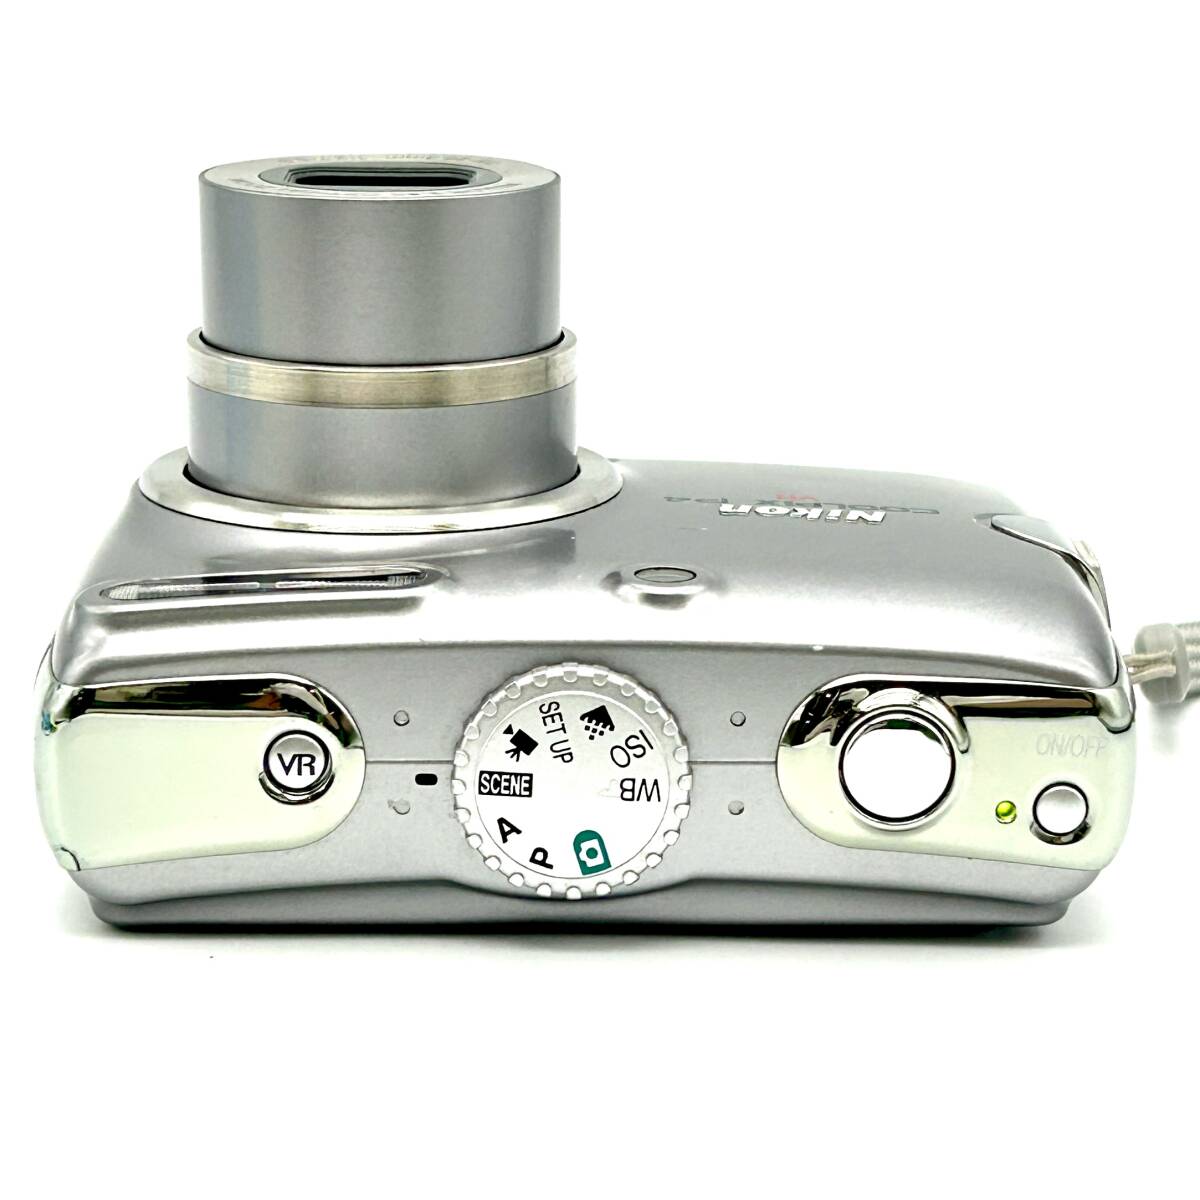 HY1514■【シャッター・フラッシュOK】Nikon ニコン COOLPIX クールピクス P4 VR CAMERA カメラ デジタルカメラ コンパクトの画像4